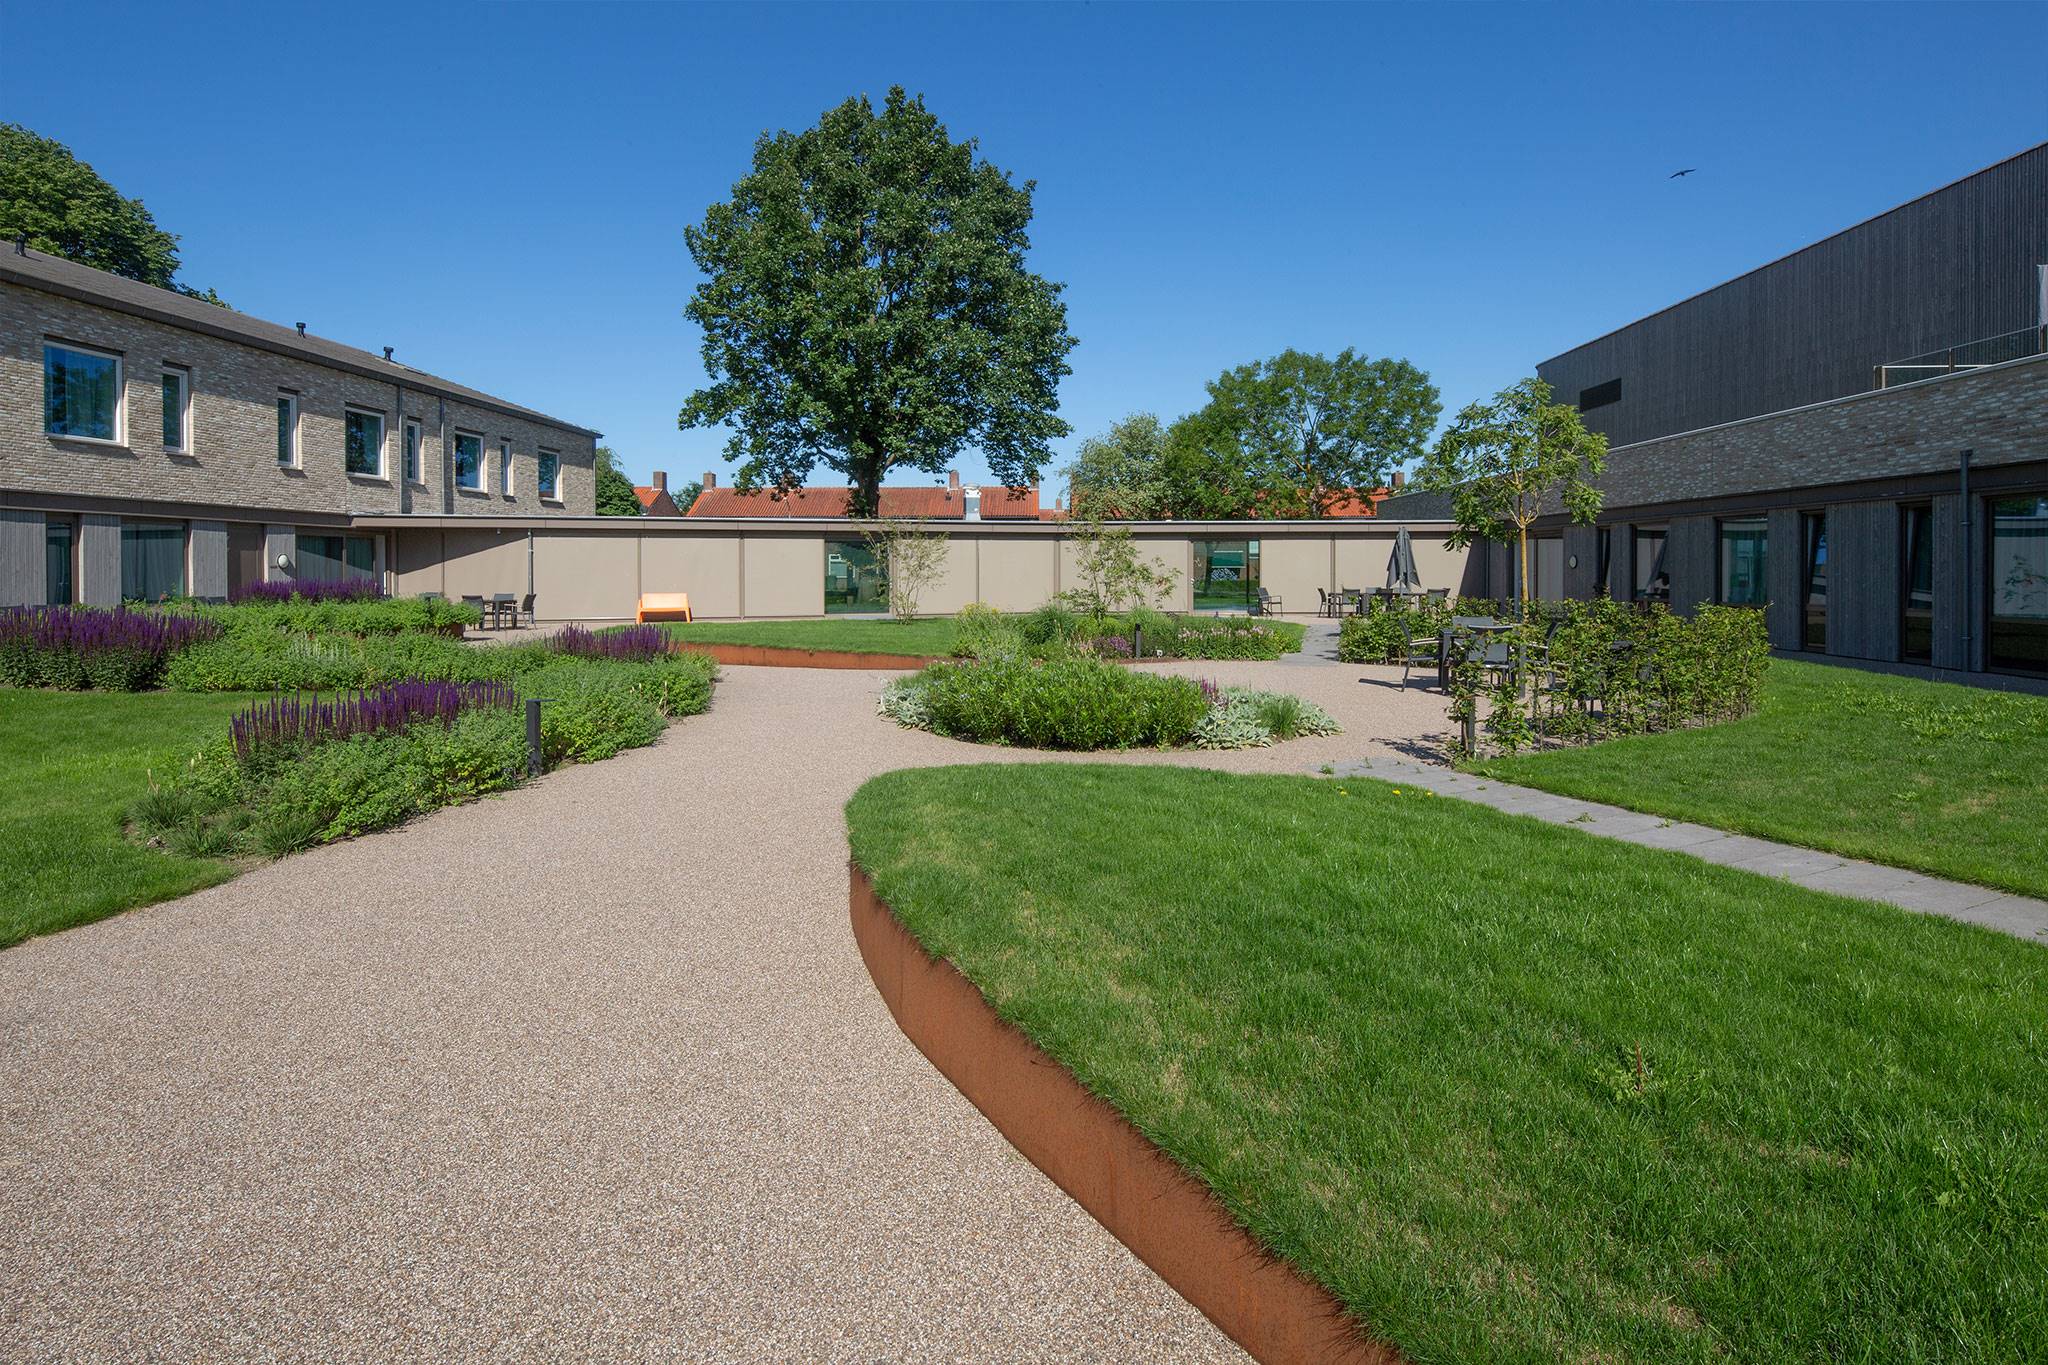 De Leystroom, Breda - Voor de bewoners hebben we een veilig begaanbaar waterdoorlatend tuinpad aangelegd